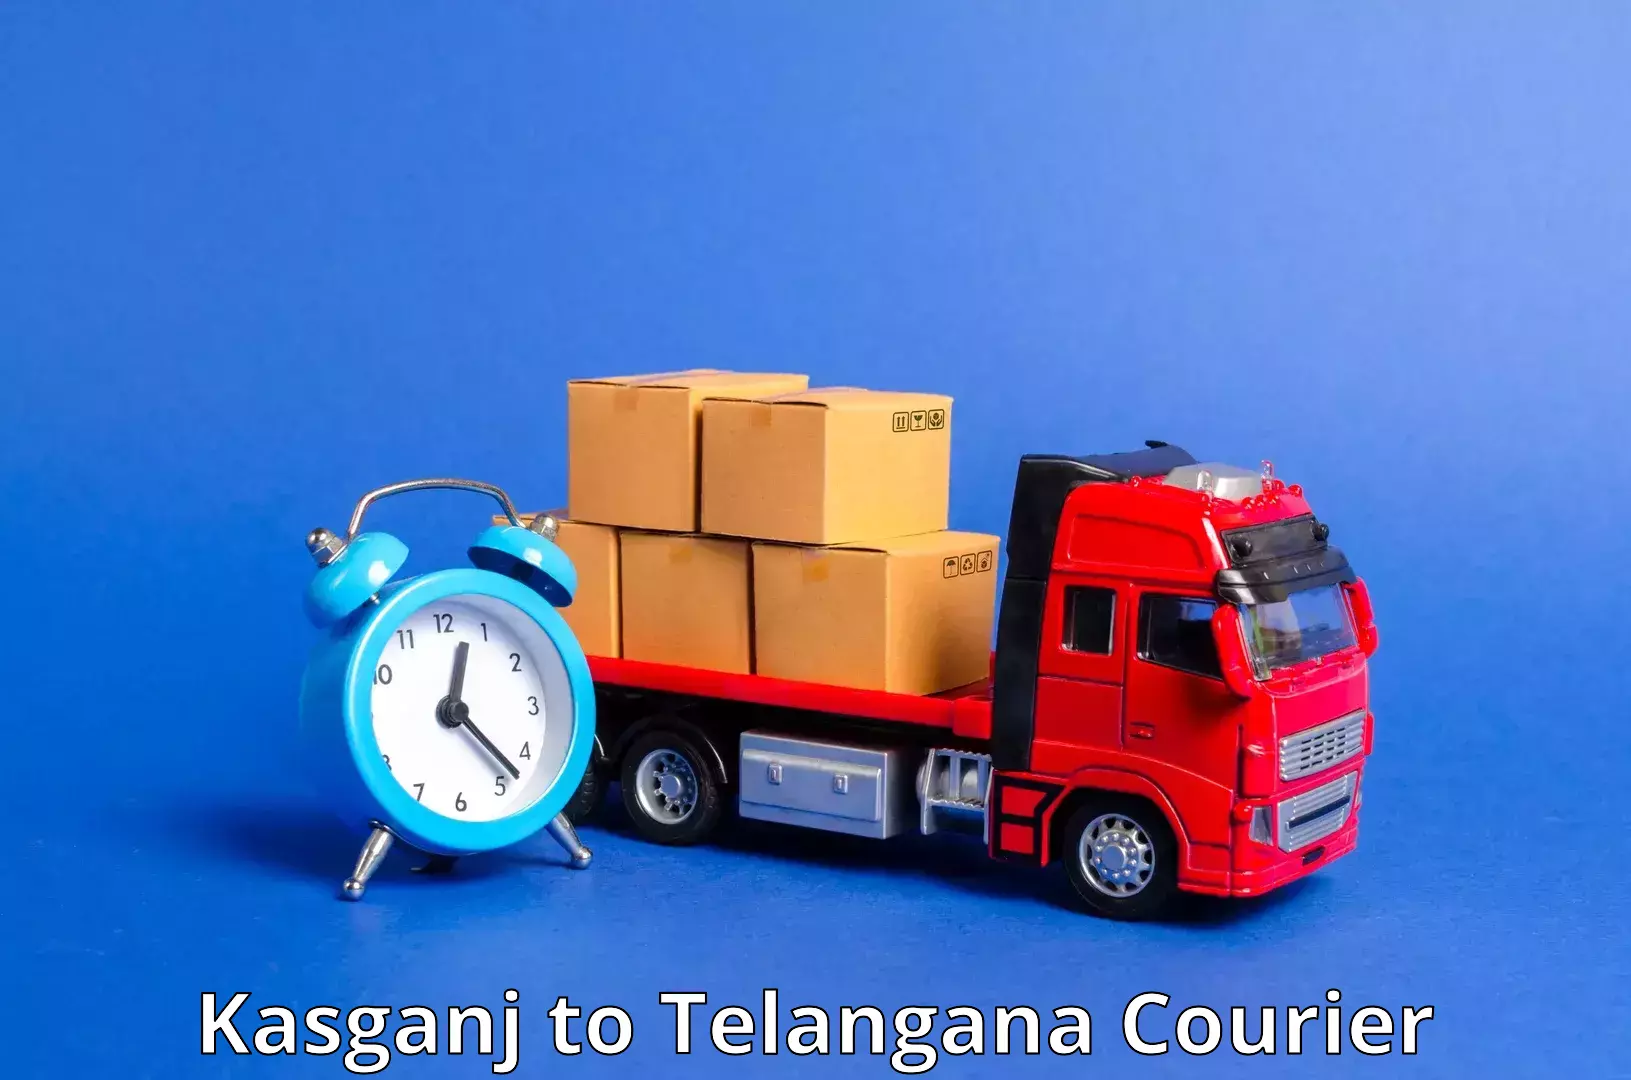 24/7 courier service in Kasganj to Dharmapuri Jagtial